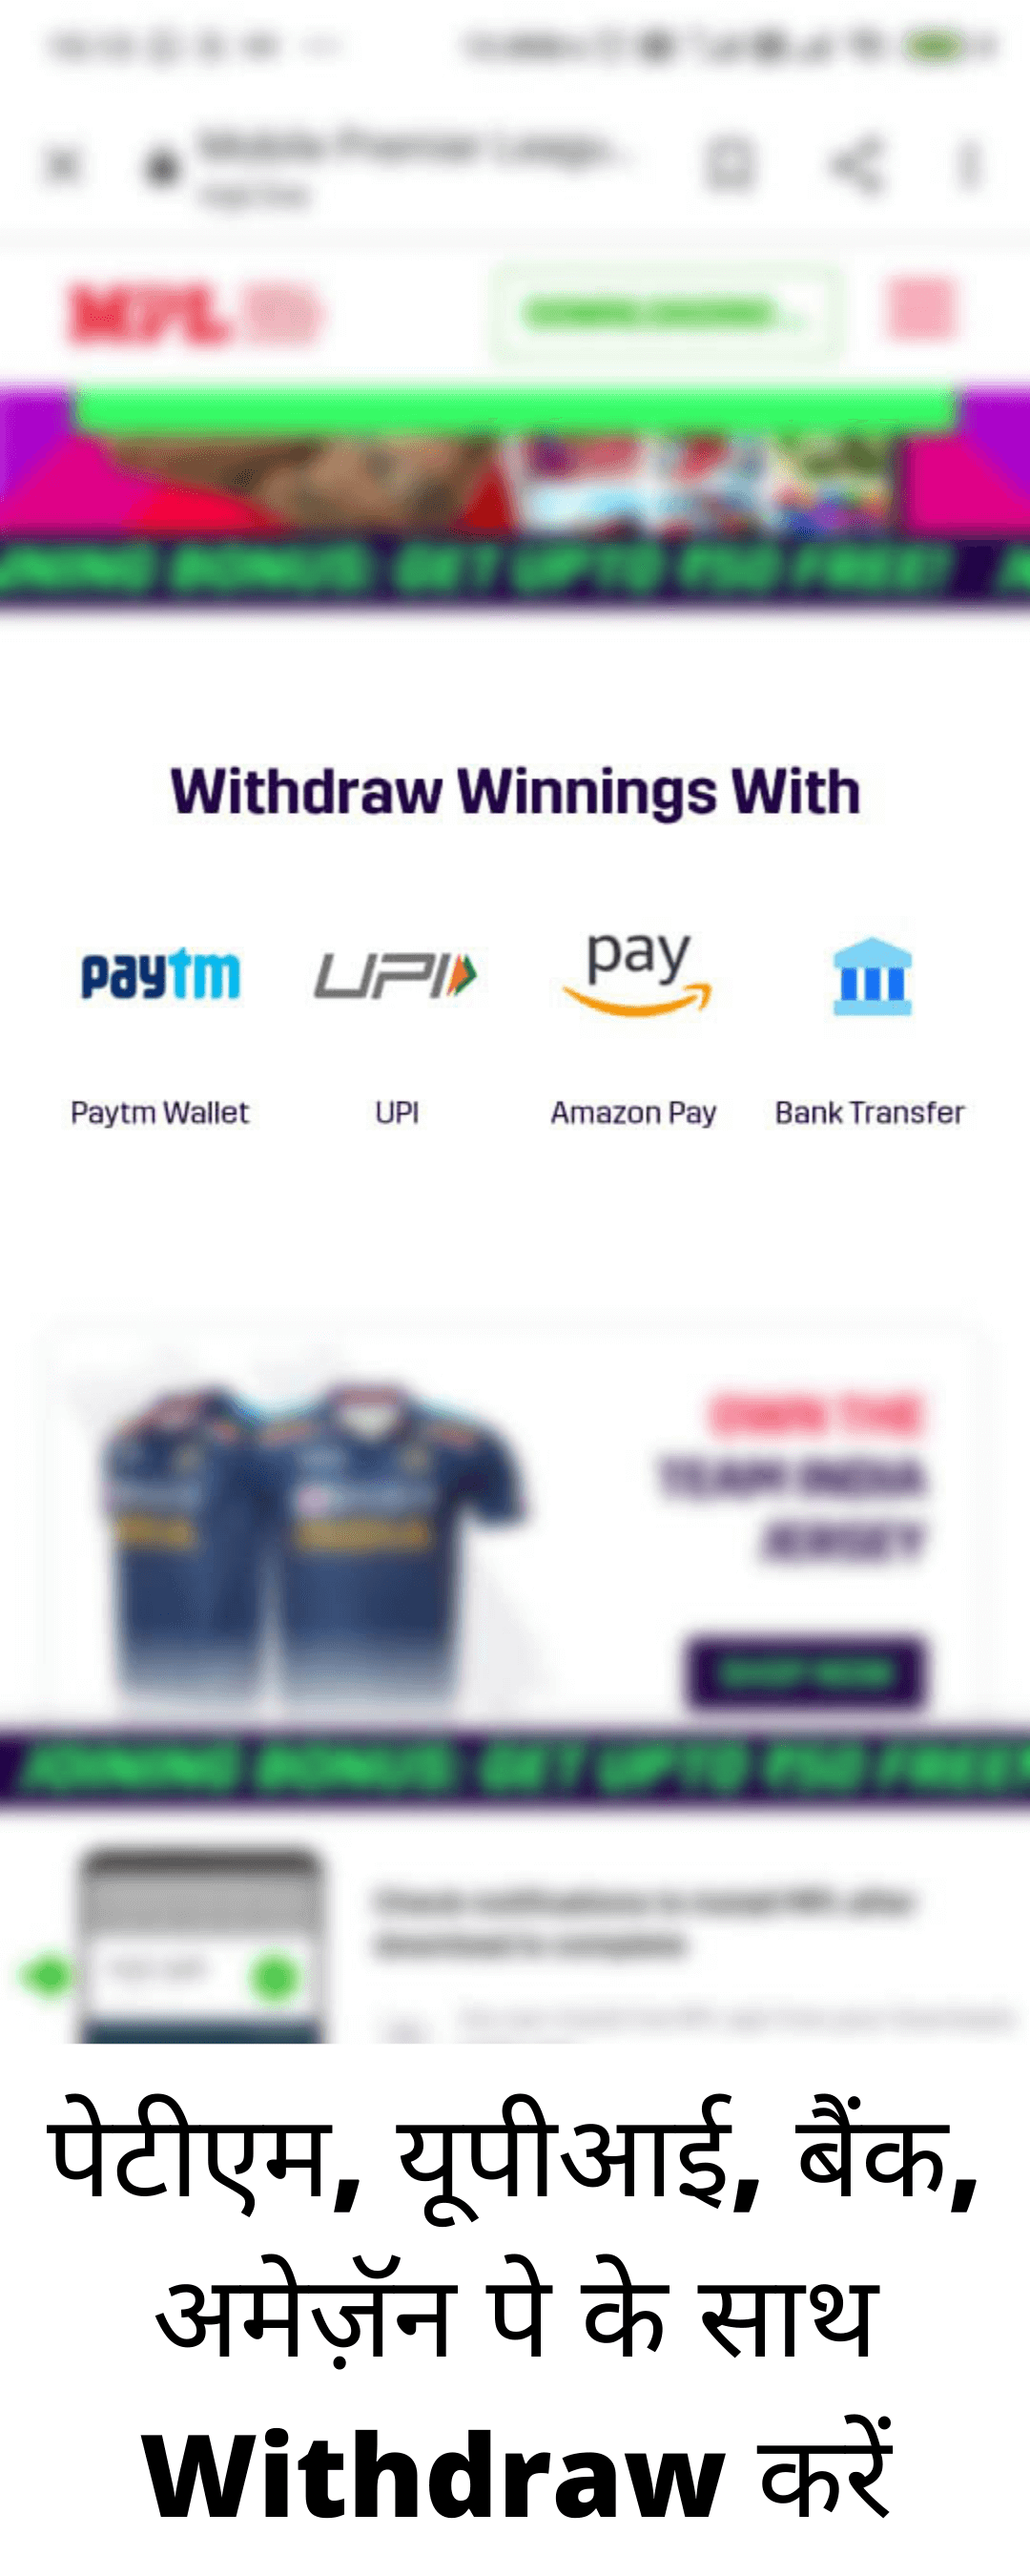 इसके बाद में आपको Mode of Transfer करना है जैसे की आप Paytm , UPI, Amazon Pay में भेजना चाहते है या फिर बैंक में.